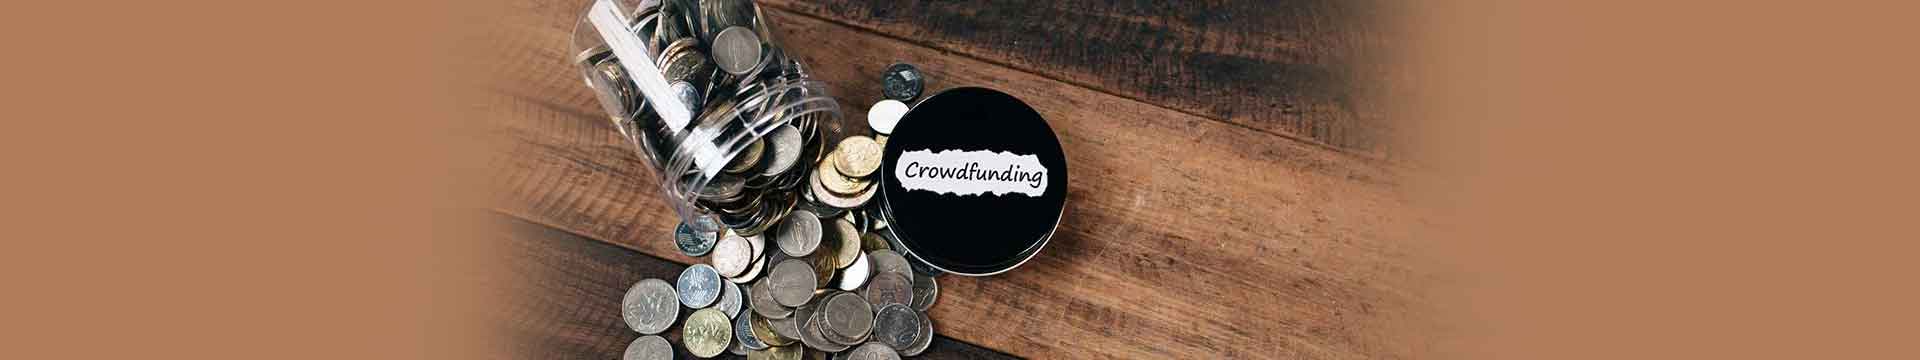 3 ข้อที่ต้องใส่ใจ ก่อนเริ่มระดมทุน Crowdfunding